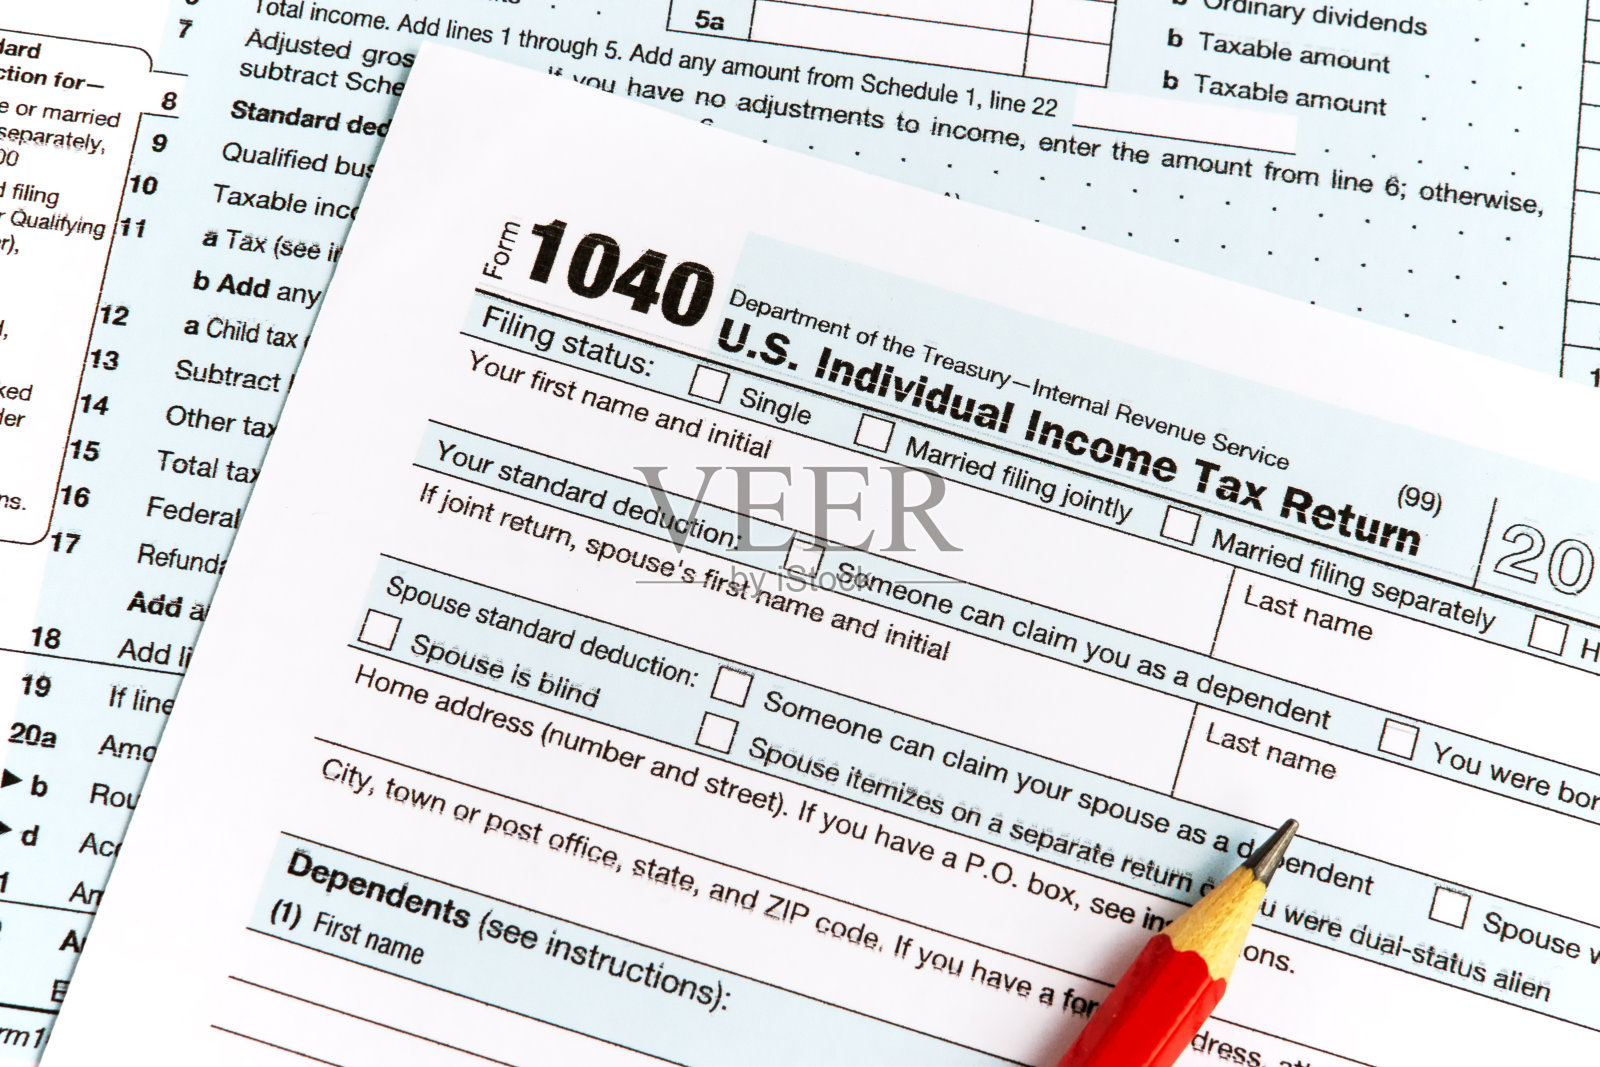 所得税申报表IRS 1040文件照片摄影图片